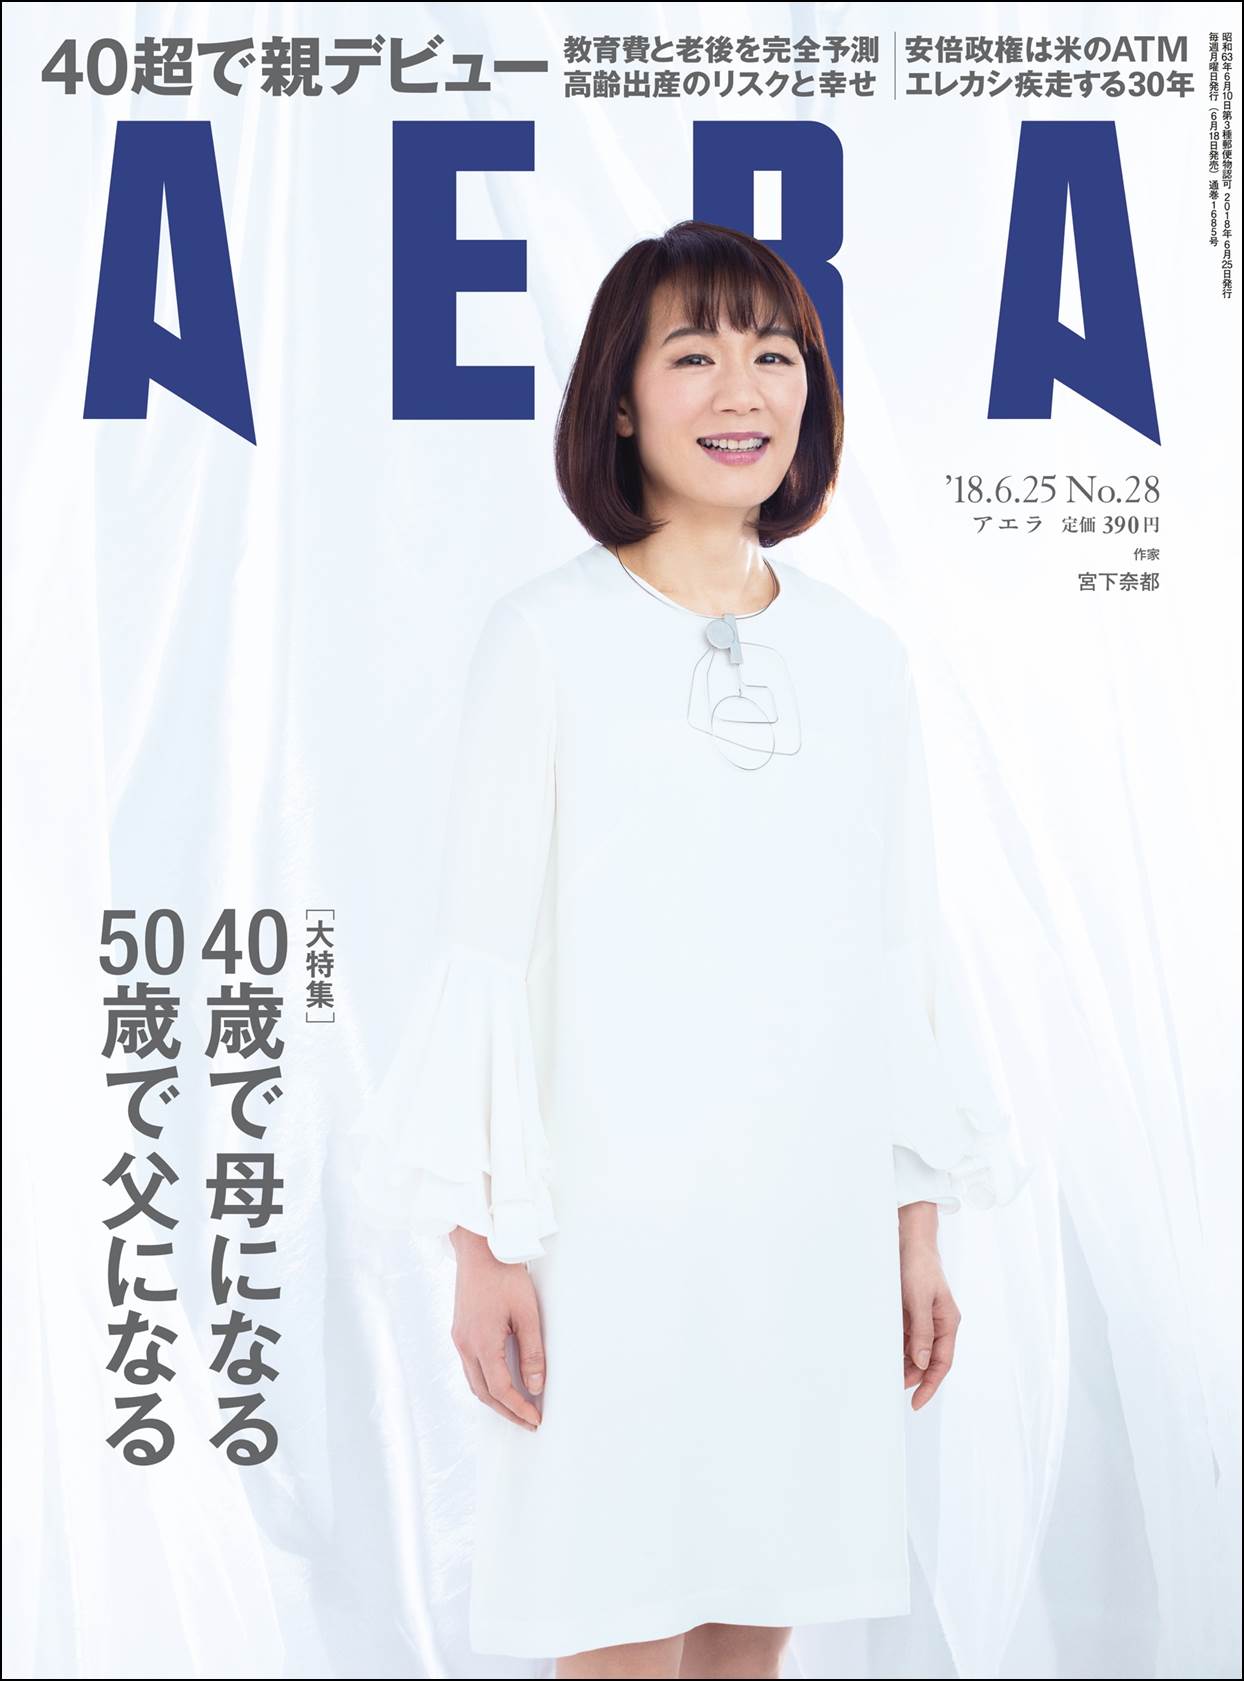 エレファントカシマシが Aera 現代の肖像 に 初 登場 株式会社朝日新聞出版のプレスリリース